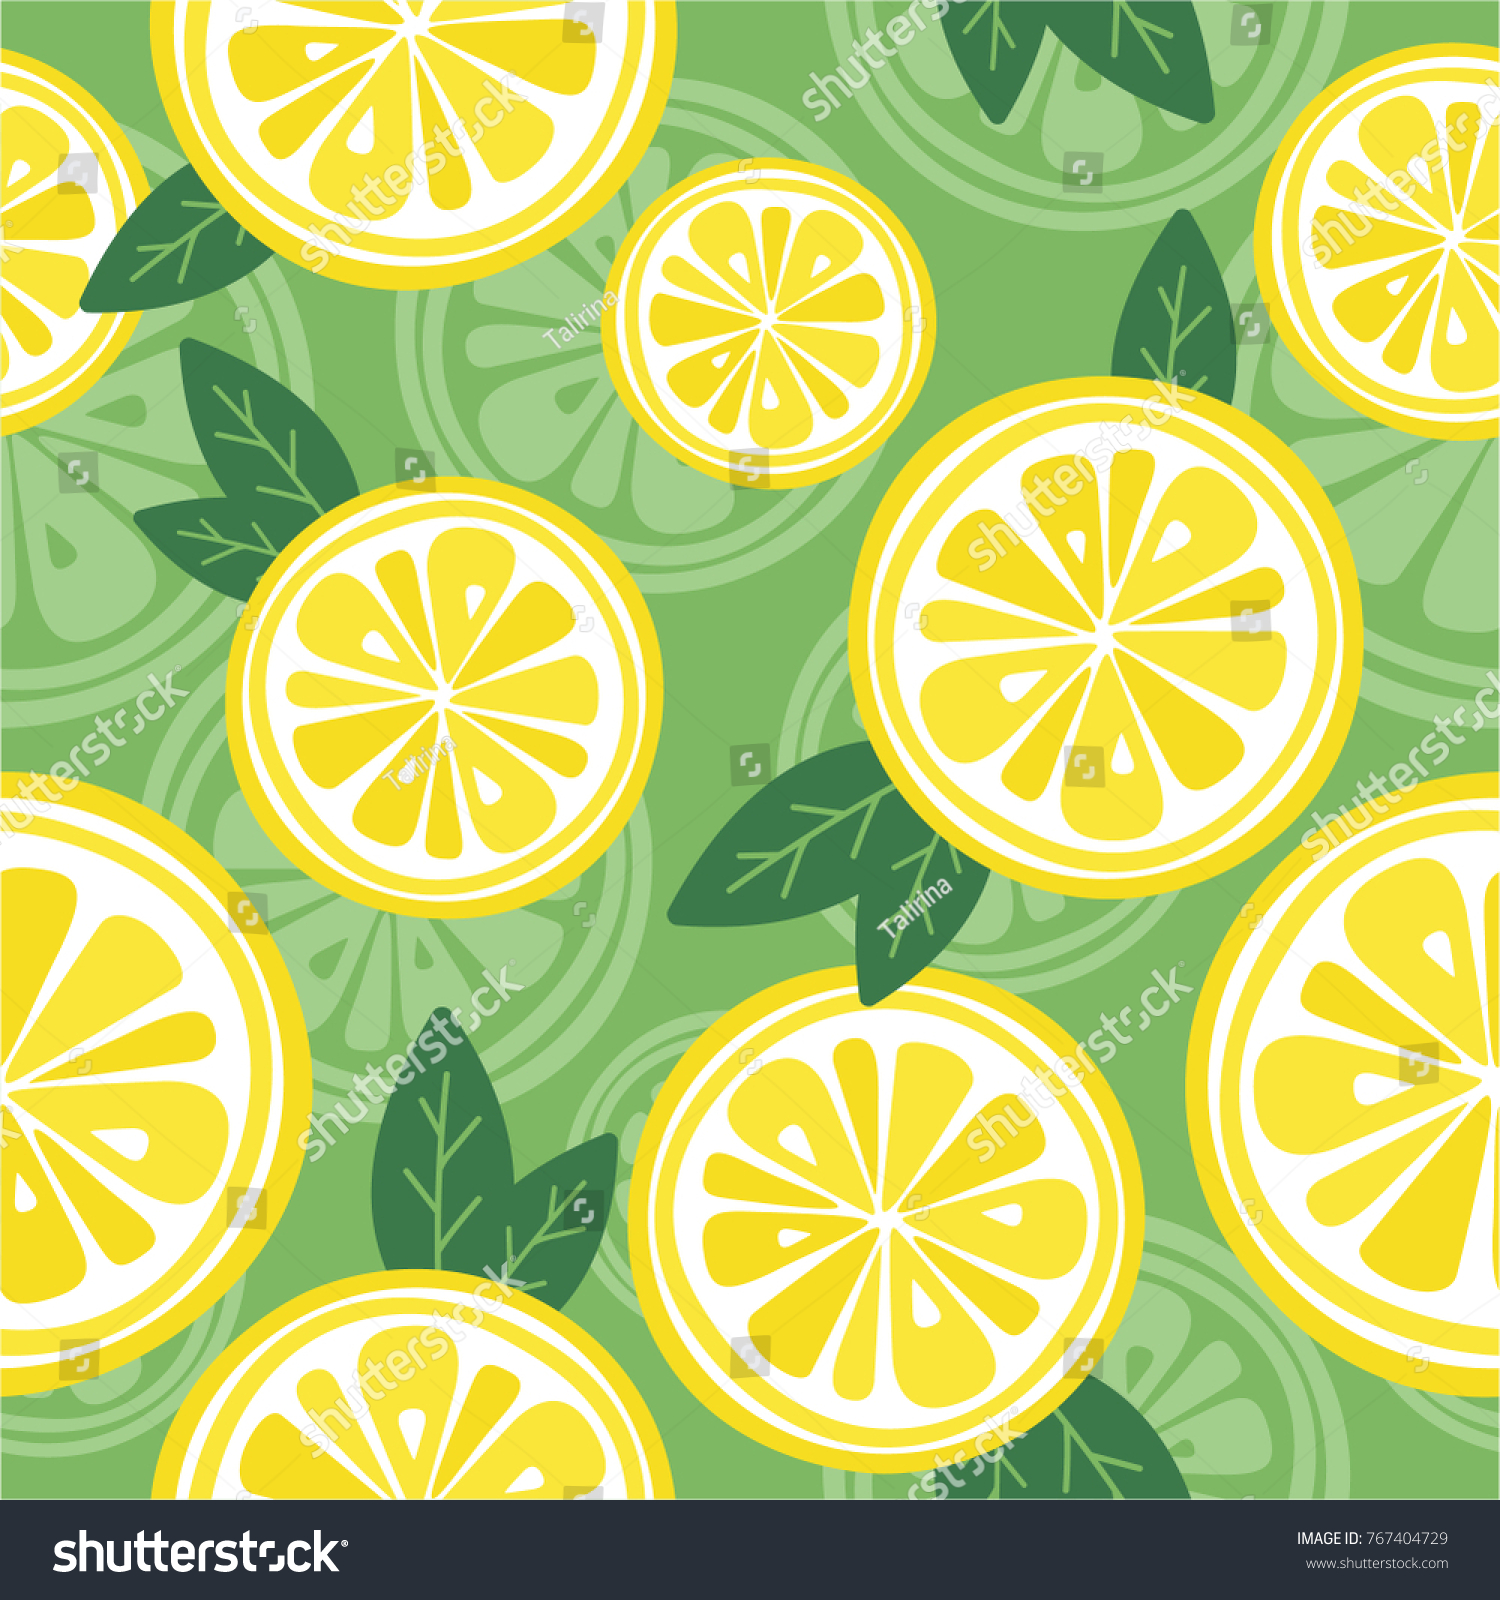 新鮮なレモンの背景 手描きの重なり合う背景 カラフルな壁紙のベクター画像 シームレスな模様と柑橘類のコレクション 印刷に適した装飾イラスト のベクター画像素材 ロイヤリティフリー